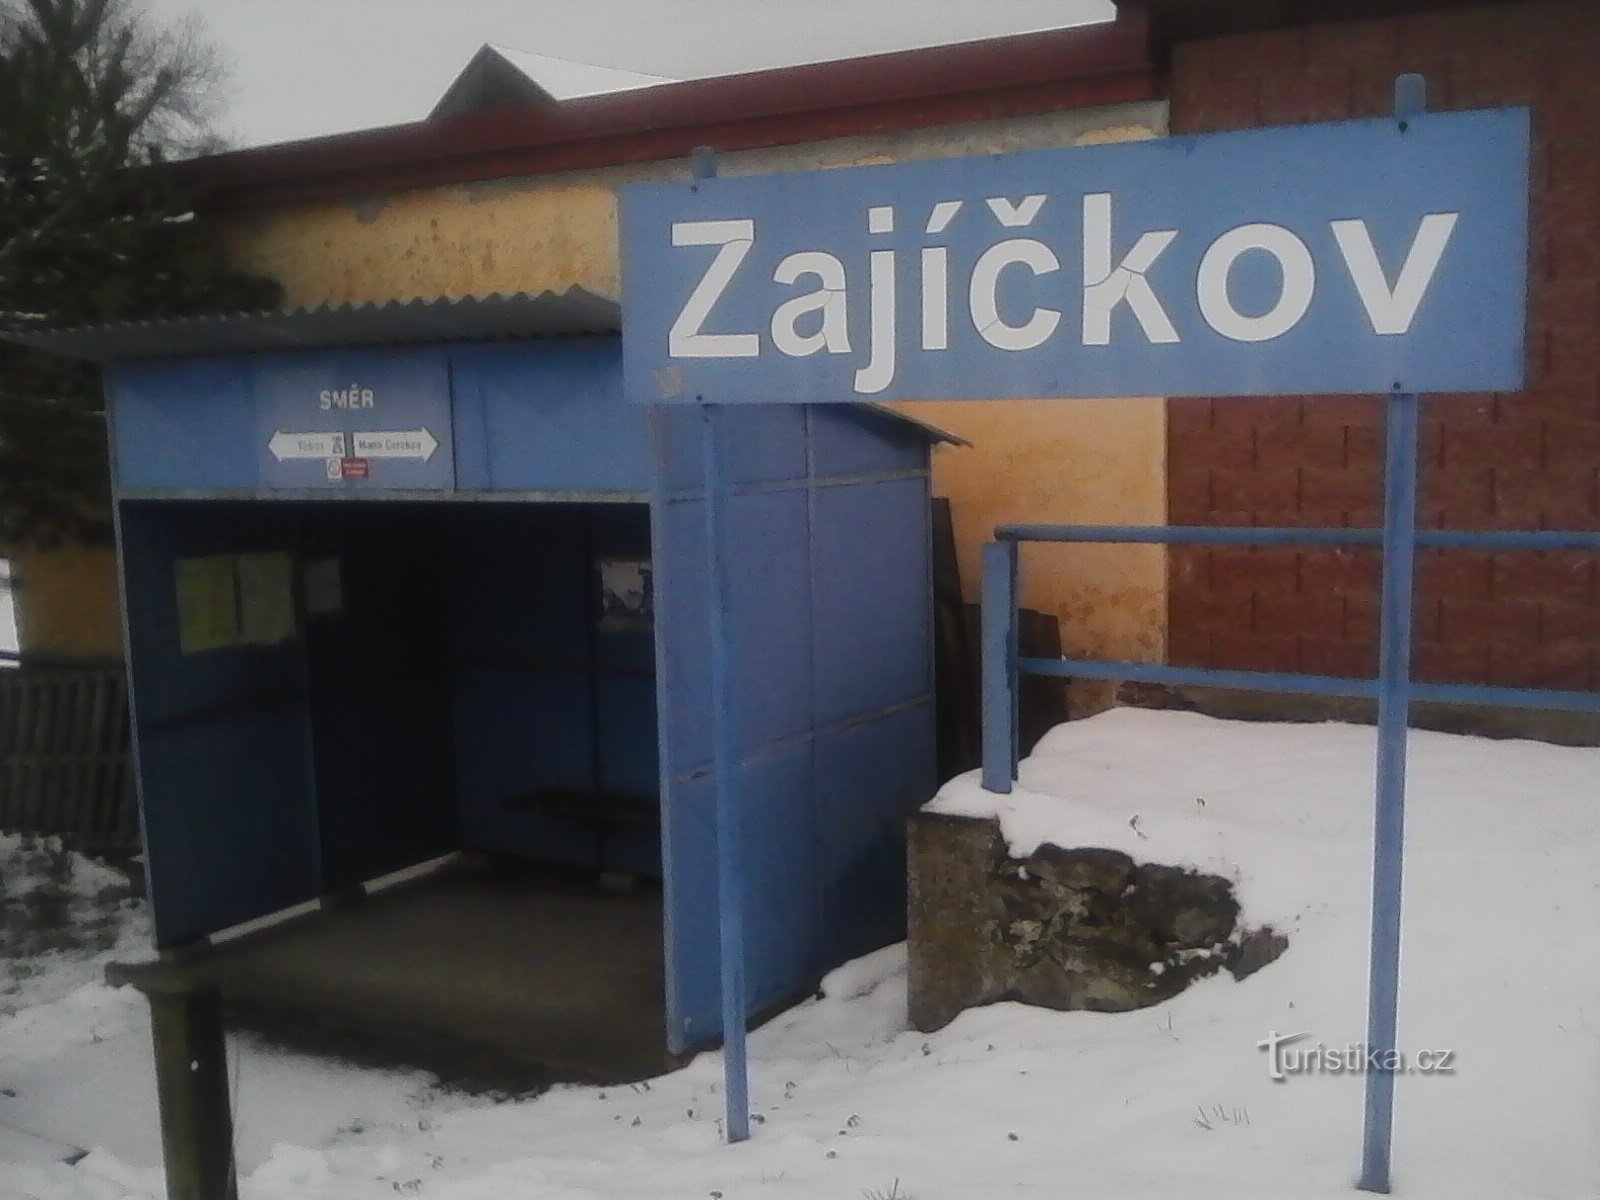 1. Zajíčkov - the starting point of today's hike.